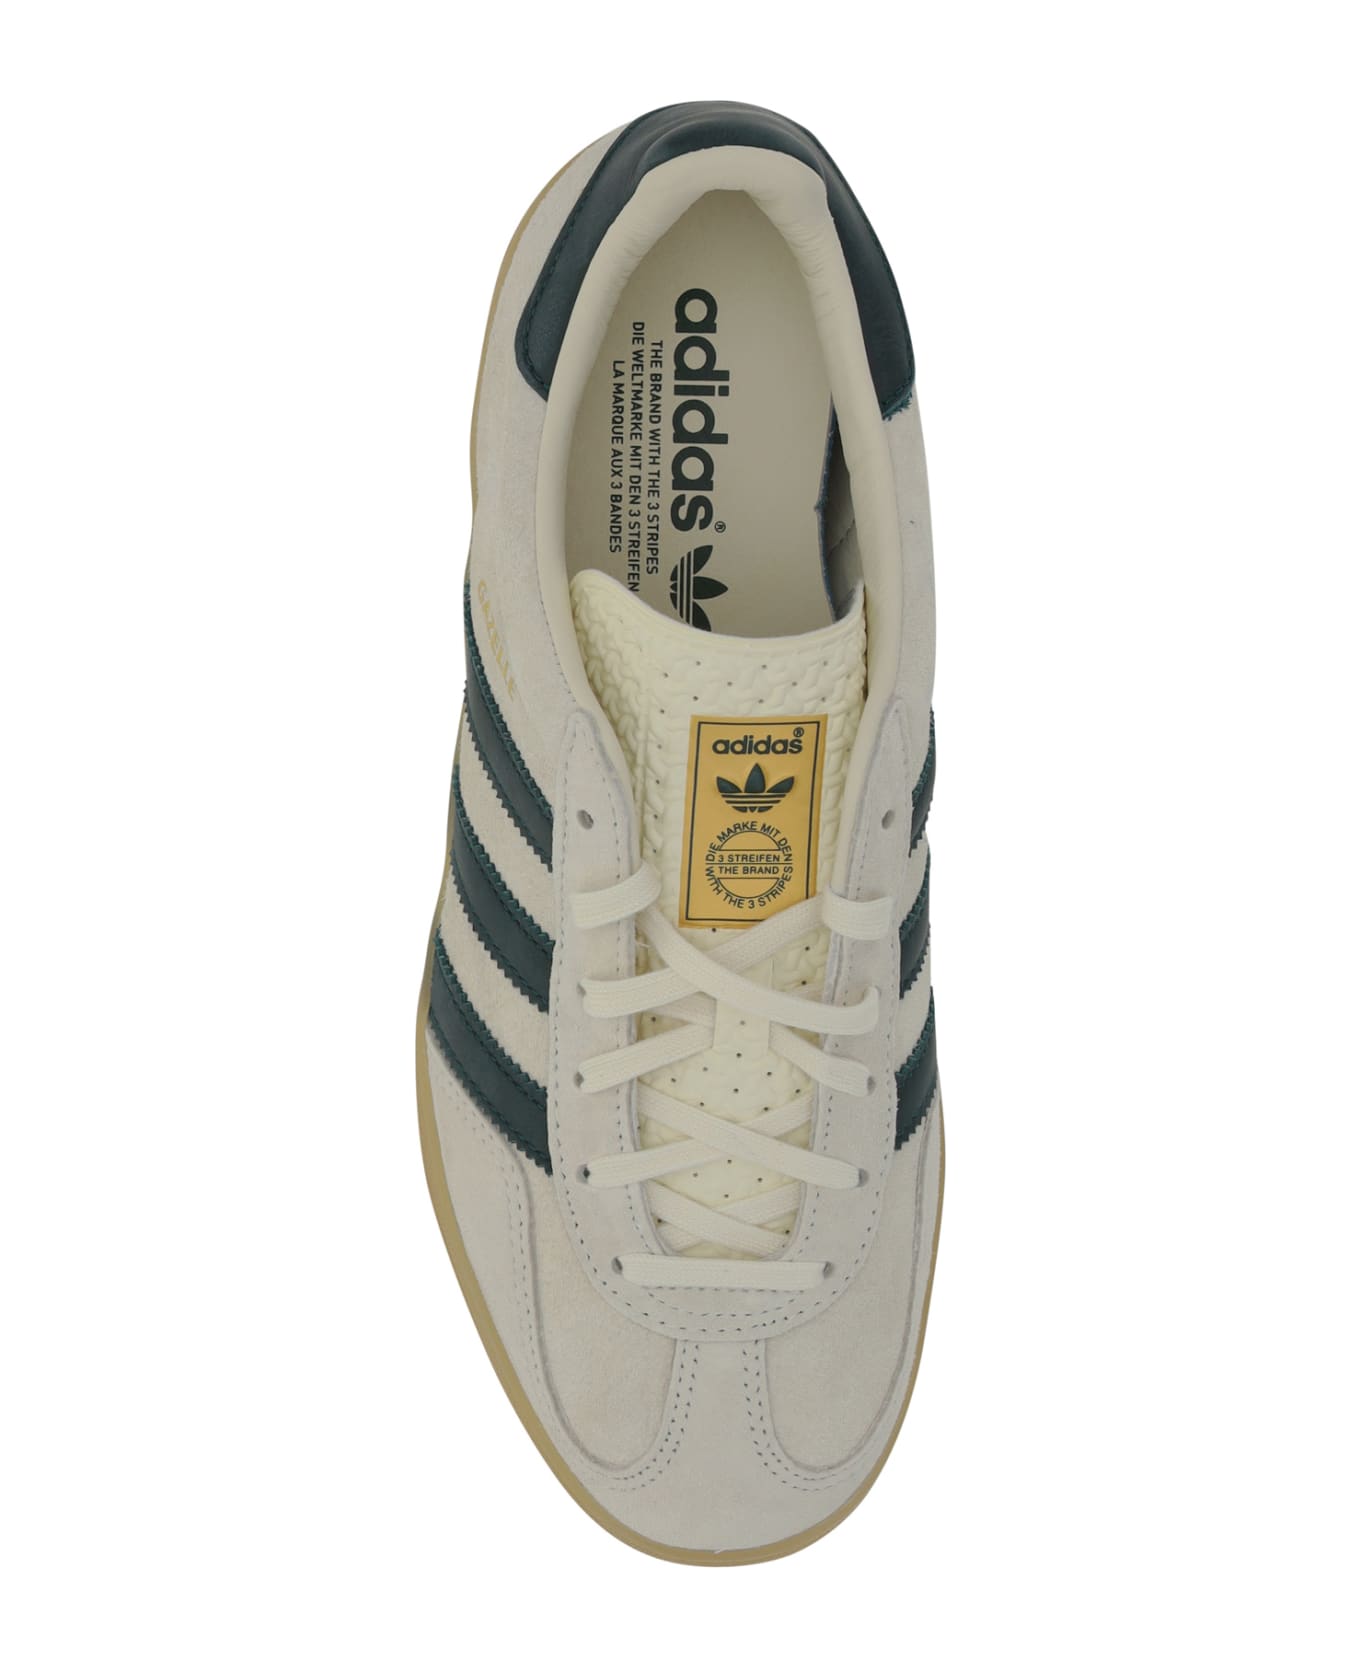 Adidas Gazelle Indoor Sneakers - Crewht/cgreen/gum3 スニーカー